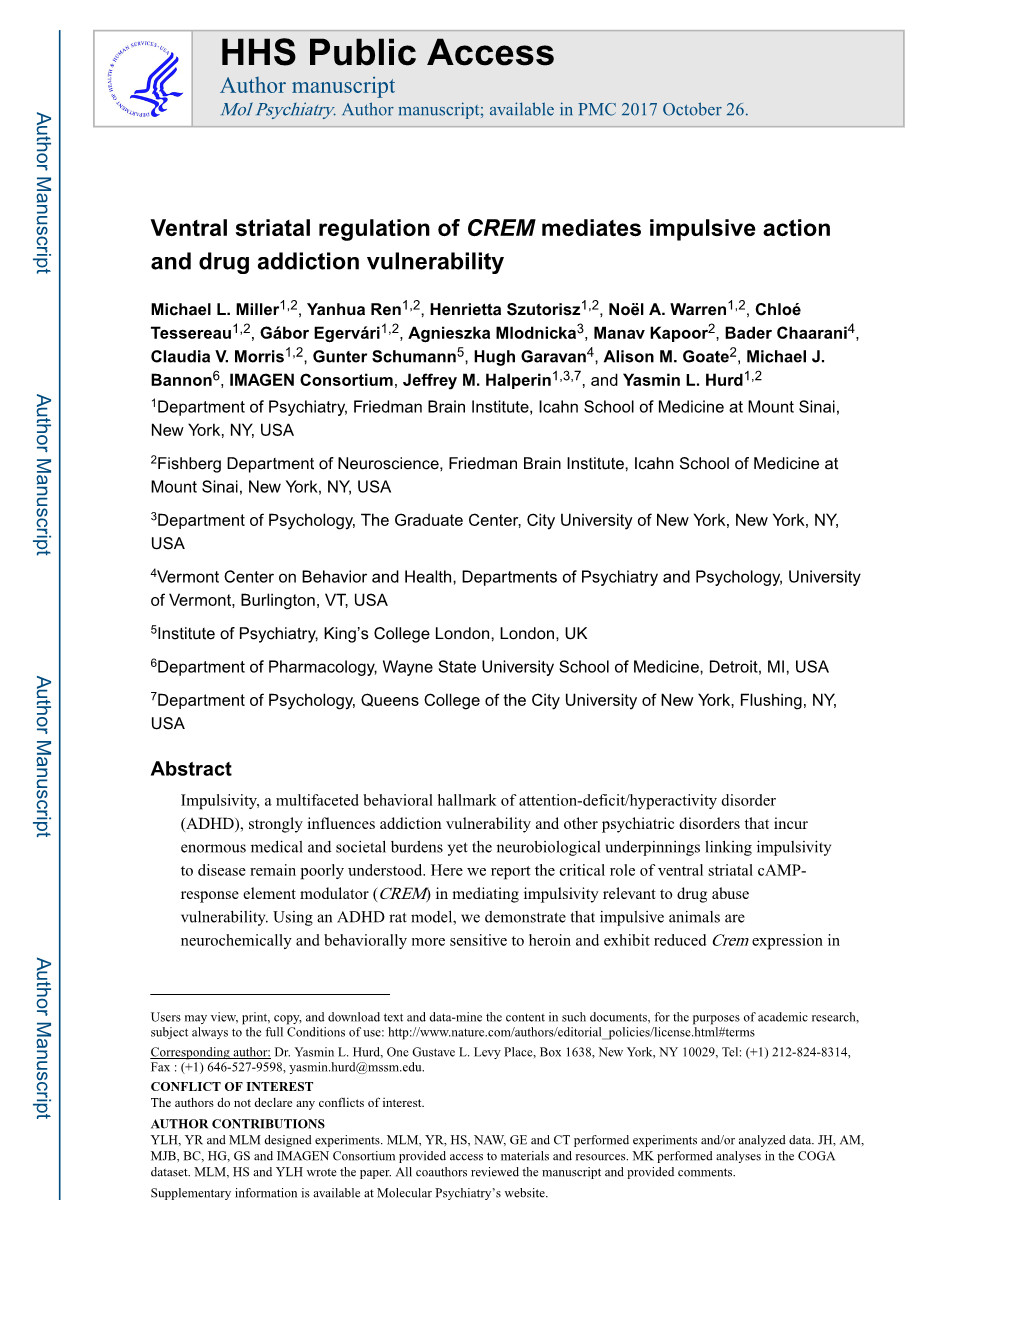 Ventral Striatal Regulation of CREM Mediates Impulsive Action and Drug Addiction Vulnerability